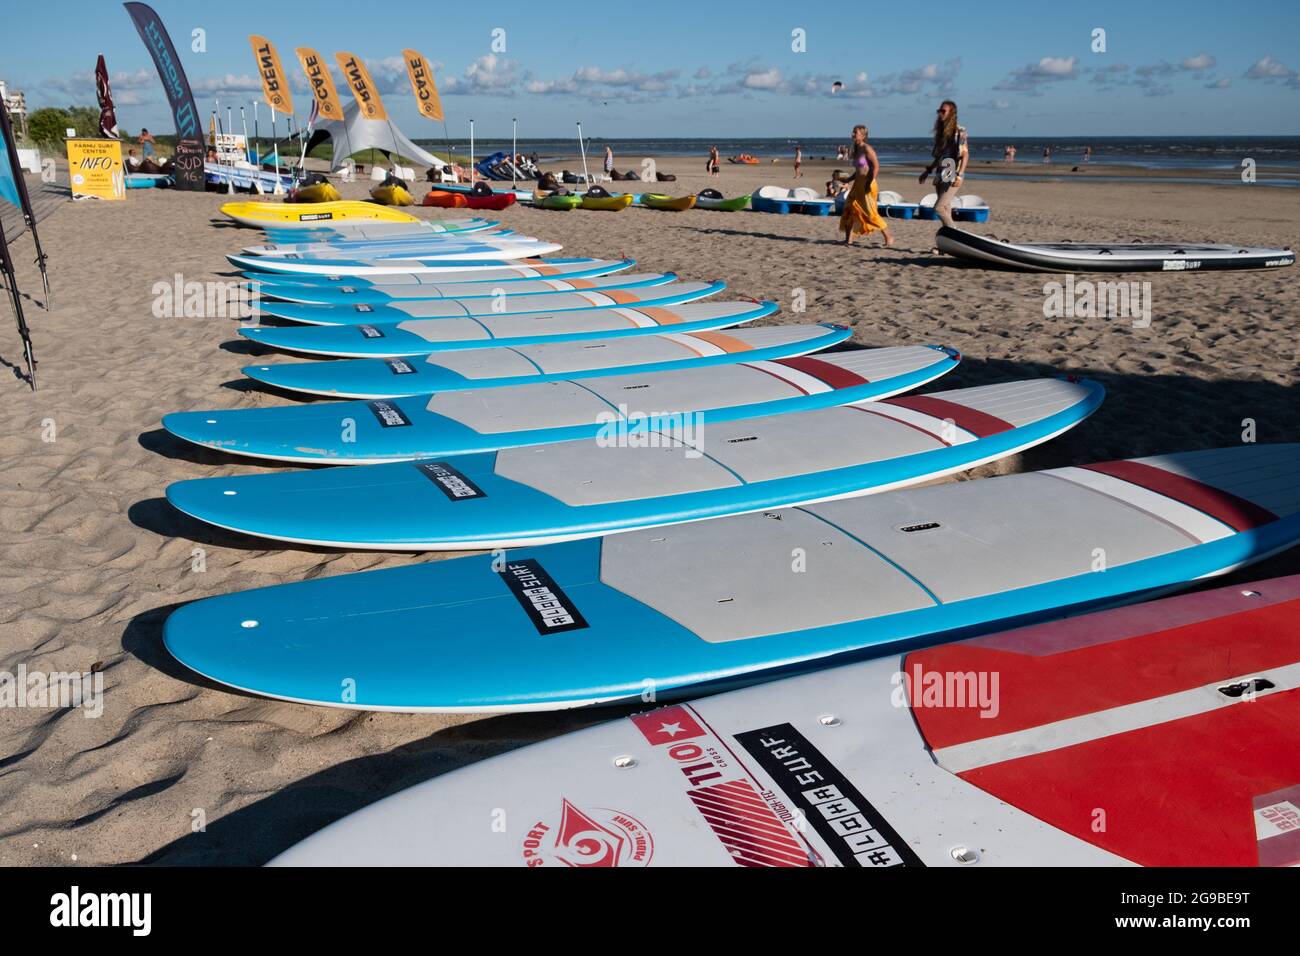 Pärnu, Estonia - 11 de julio de 2021: Alquiler de equipo de surf en el  centro de surf Aloha en la playa de Pärnu Fotografía de stock - Alamy